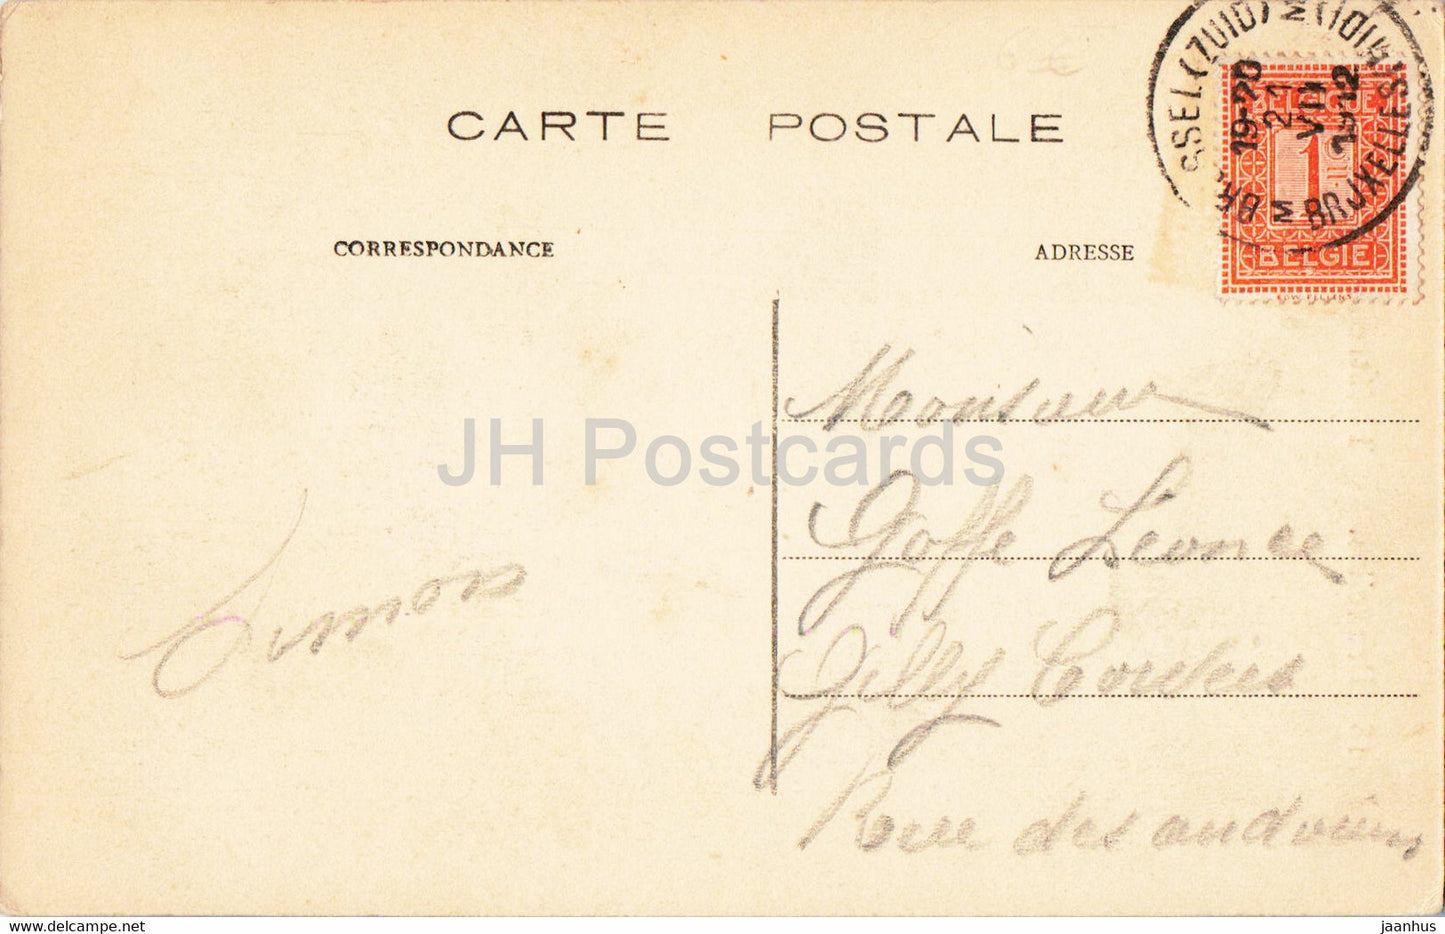 Bruxelles - Bruxelles - Théâtre Flamand - 18 - carte postale ancienne - 1912 - Belgique - occasion